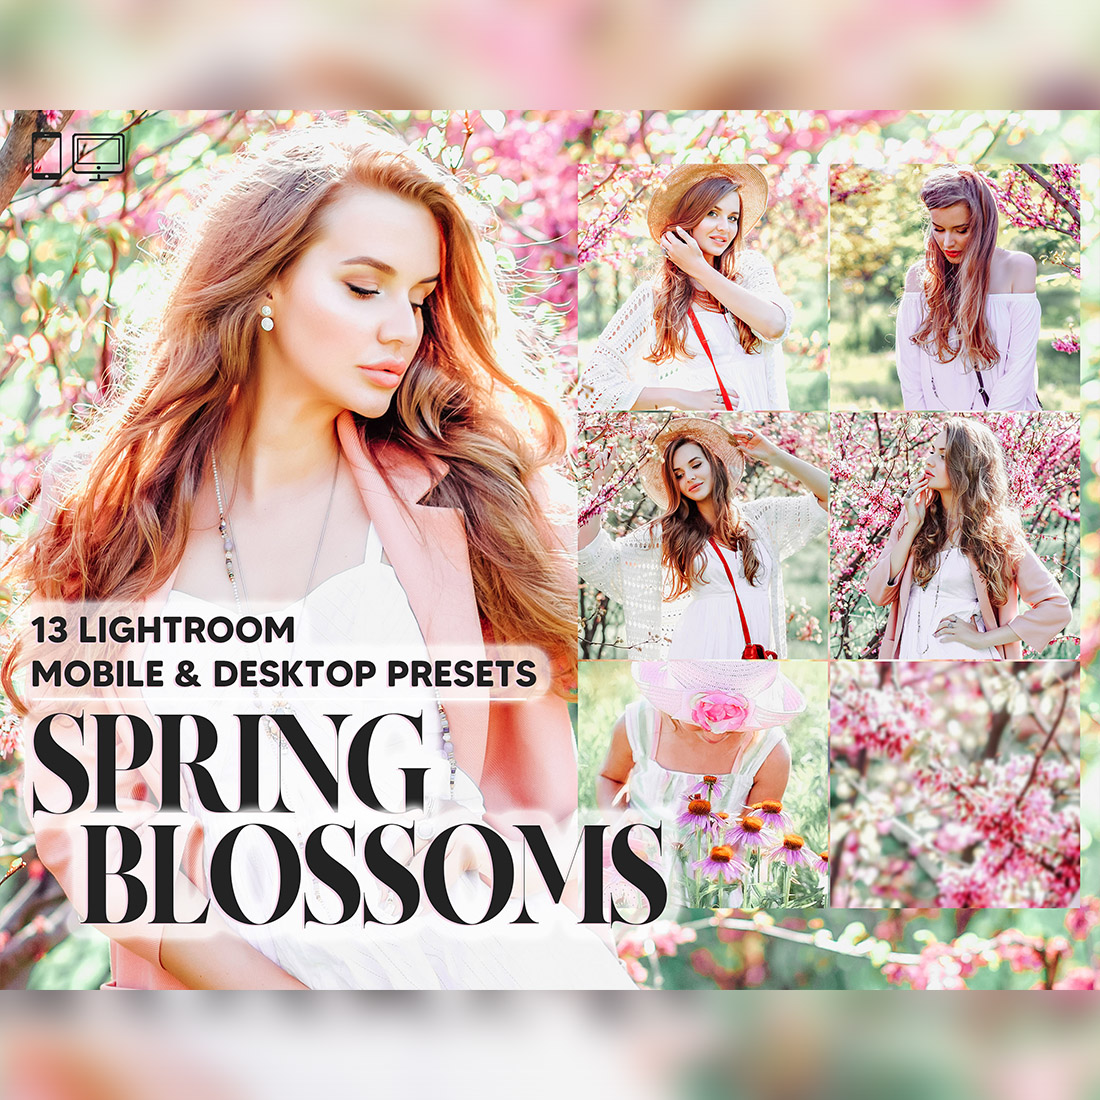 13 Spring Blossoms Lightroom Presets, Pastel Pink Mobile Preset, Natural Bright Desktop Lifestyle Portrait Theme For Instagram LR Filter DNG cover image.